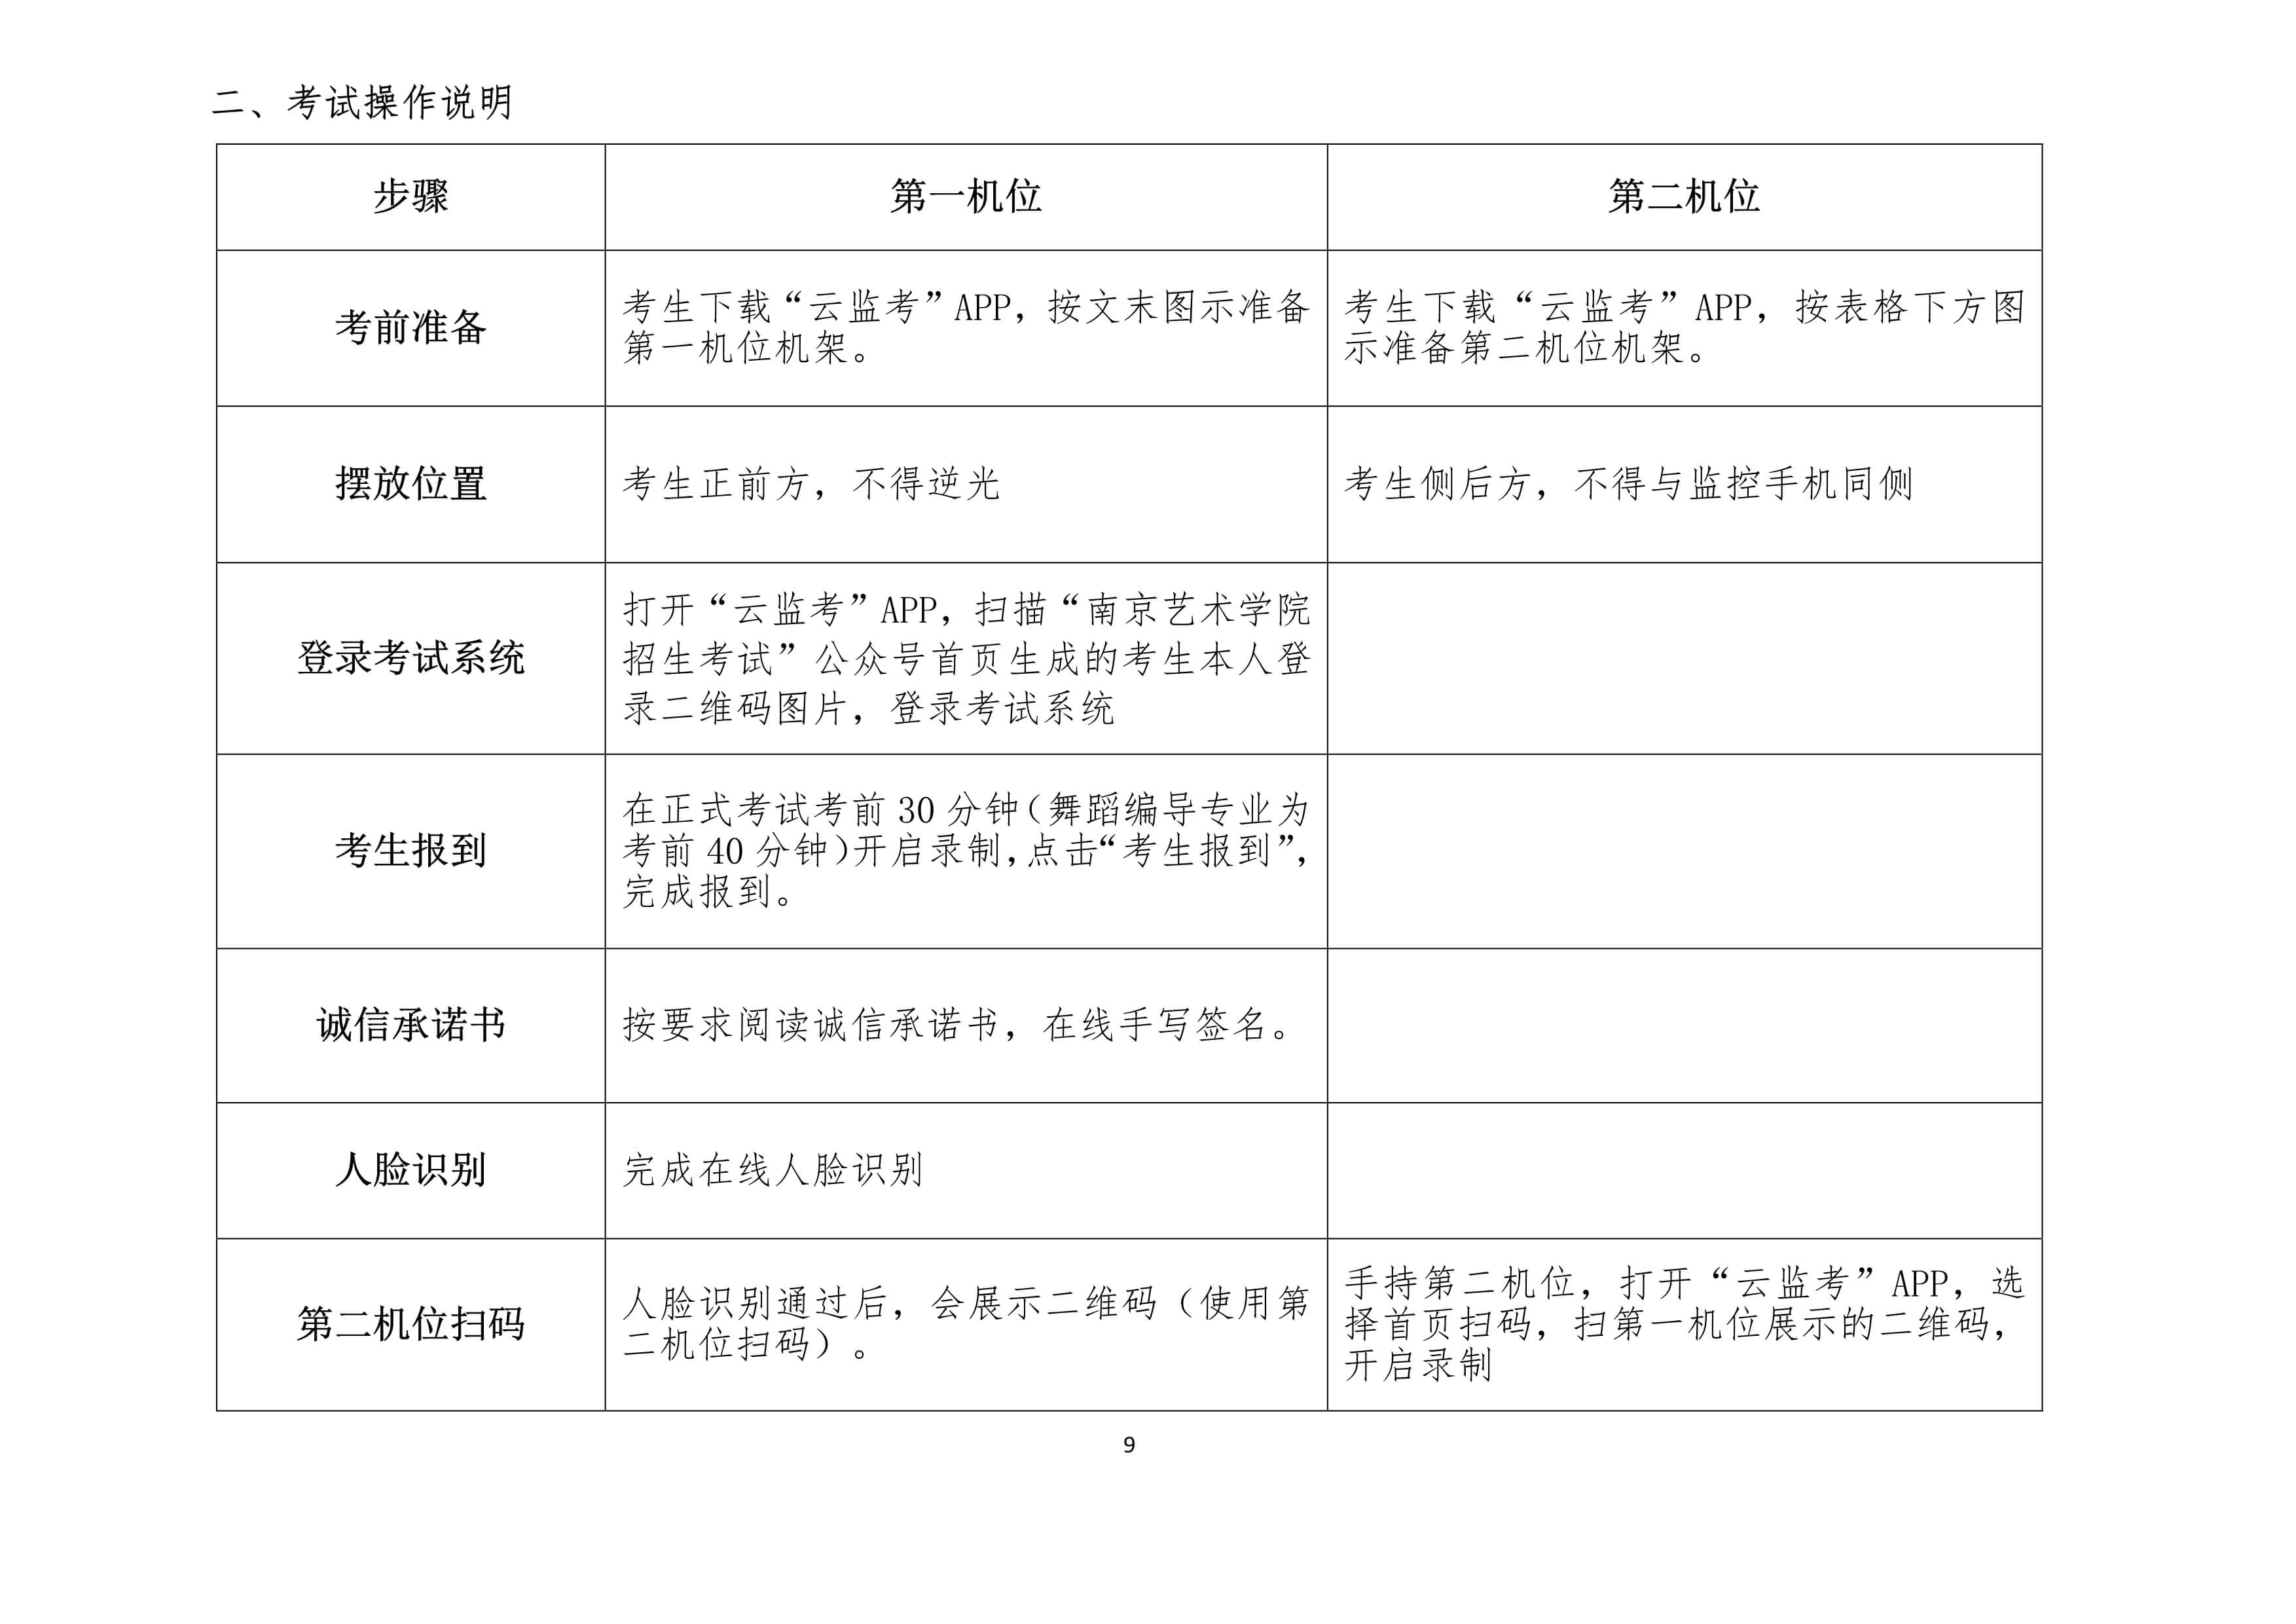 2022年南京艺术学院艺术类本科招生第二阶段（复试和只有一次性考试）专业考试舞蹈编导专业及音乐类专业视唱科目考试须知、正式考试报到及考试时间、考试规定、考试要求